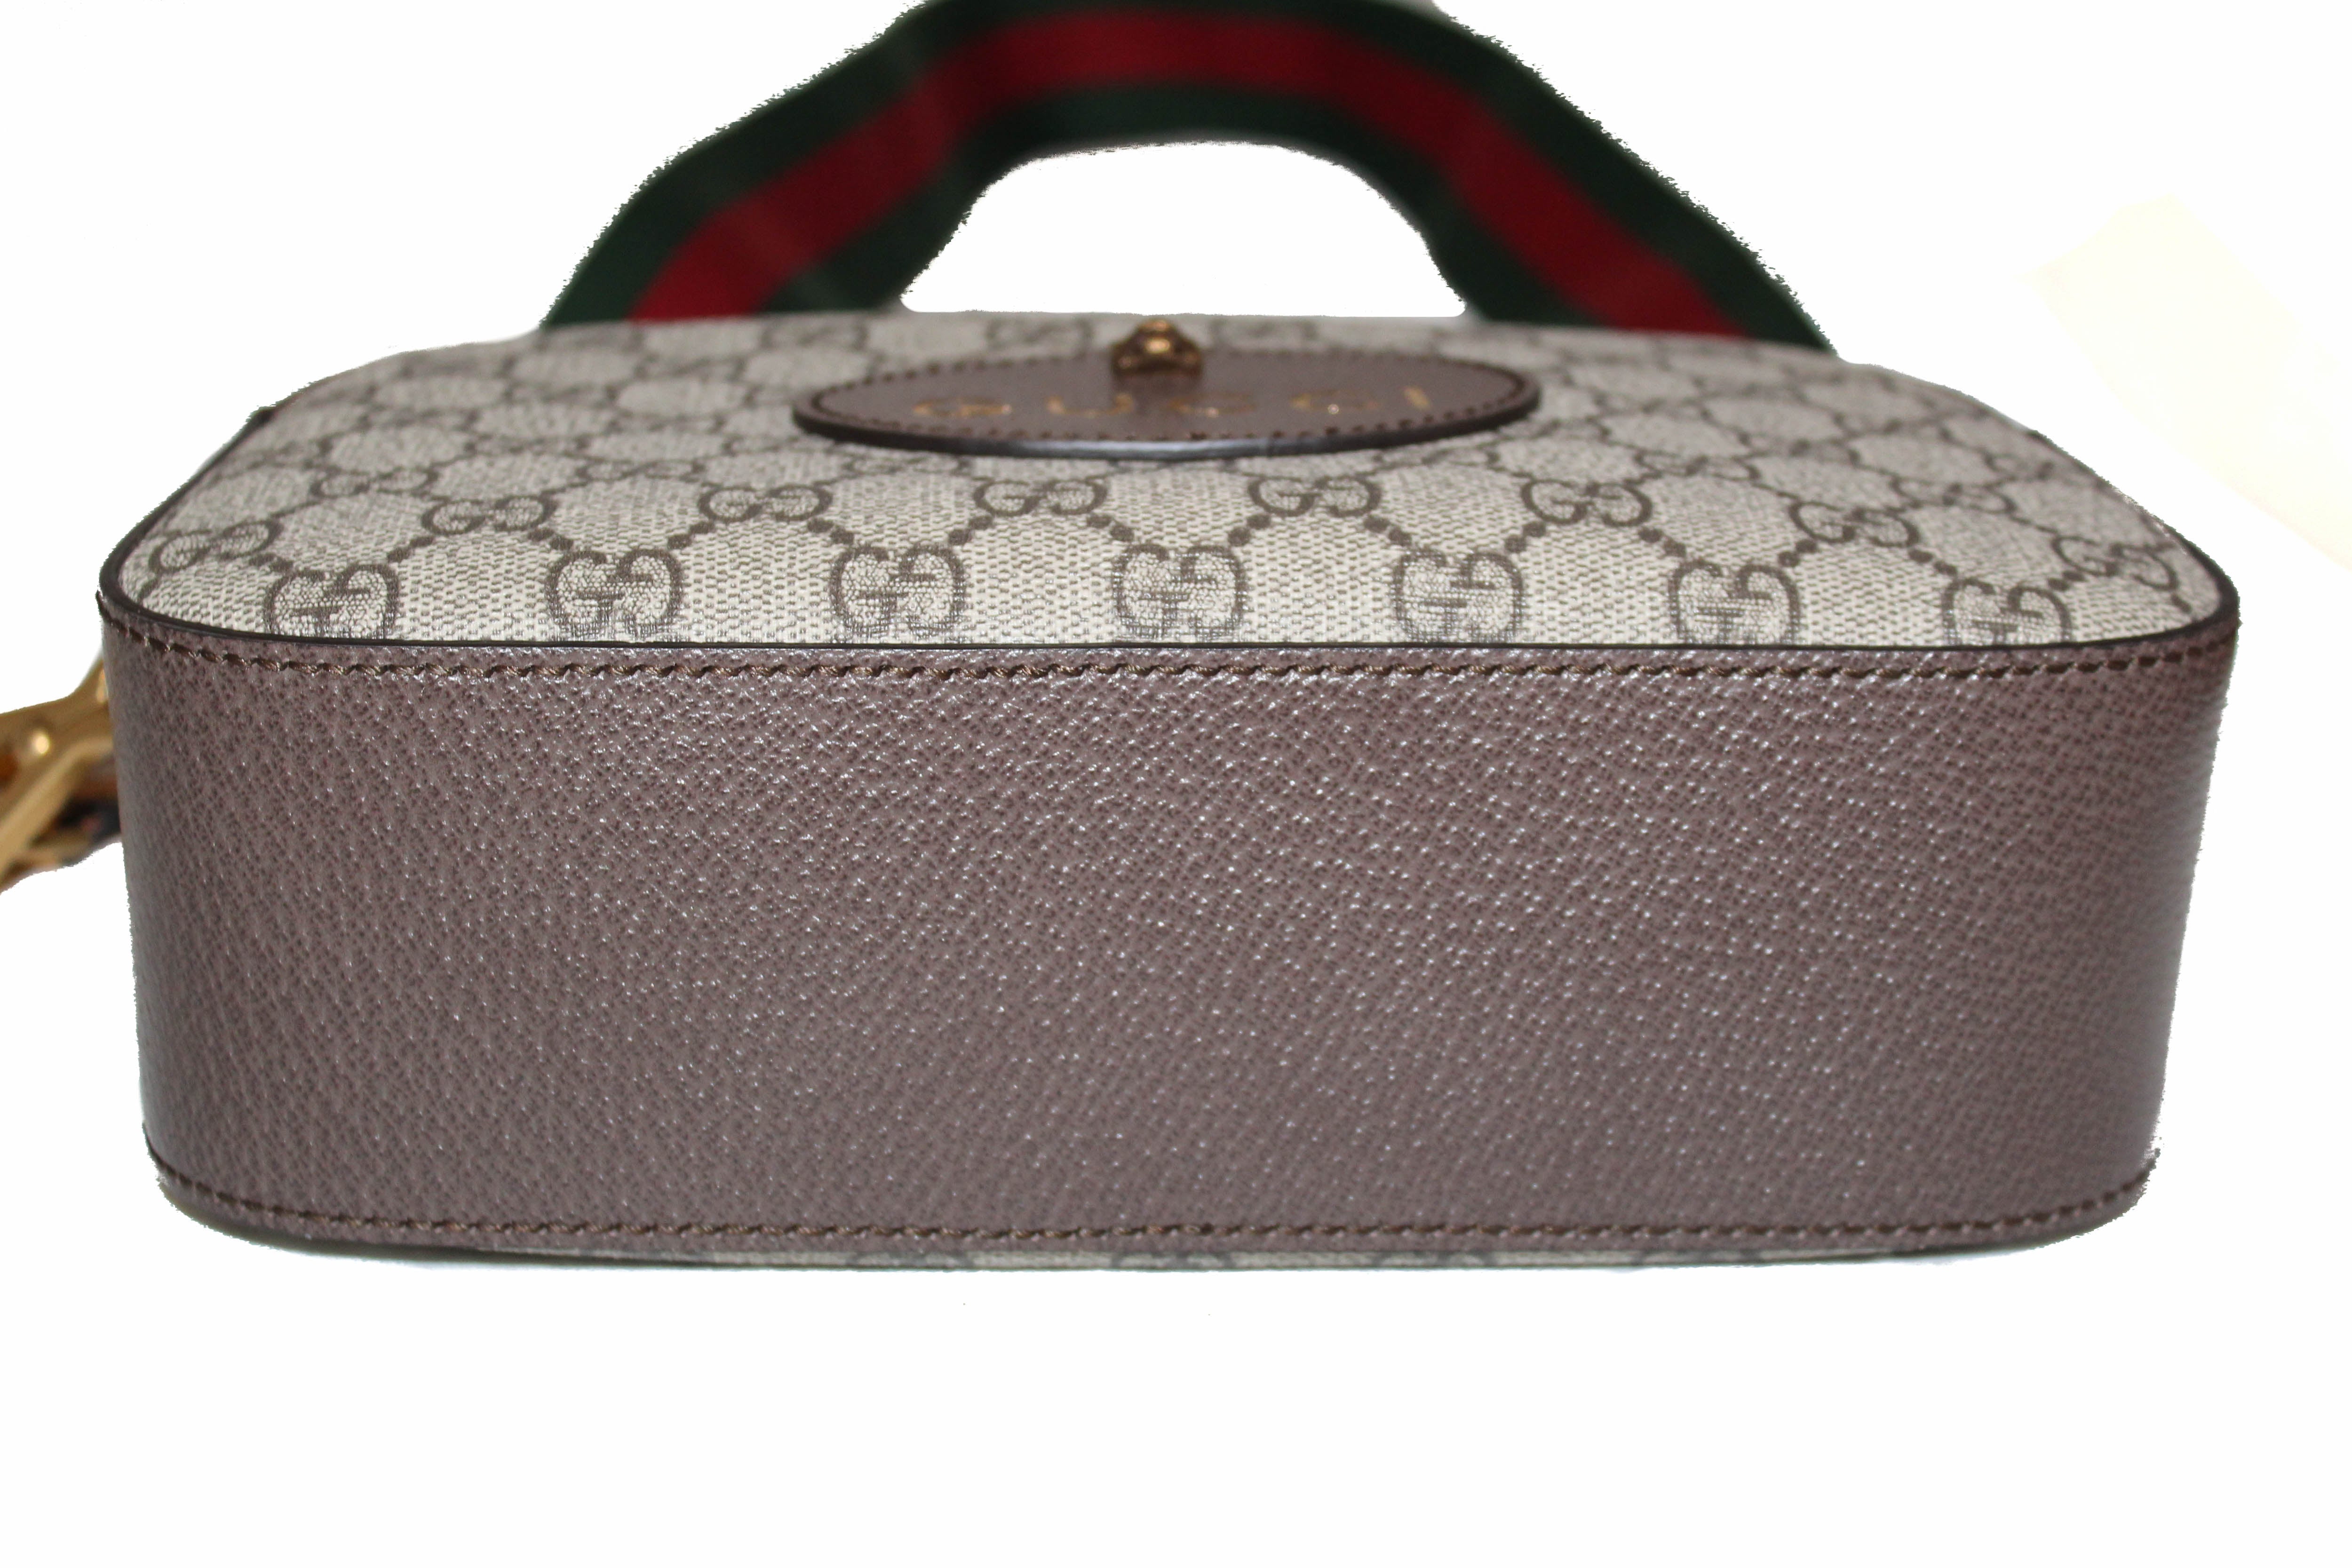 Bag for men or women, designer bag, NEO VINTAGE SUPREME MESSENGER BAG  handbag – YesFashionLuxe